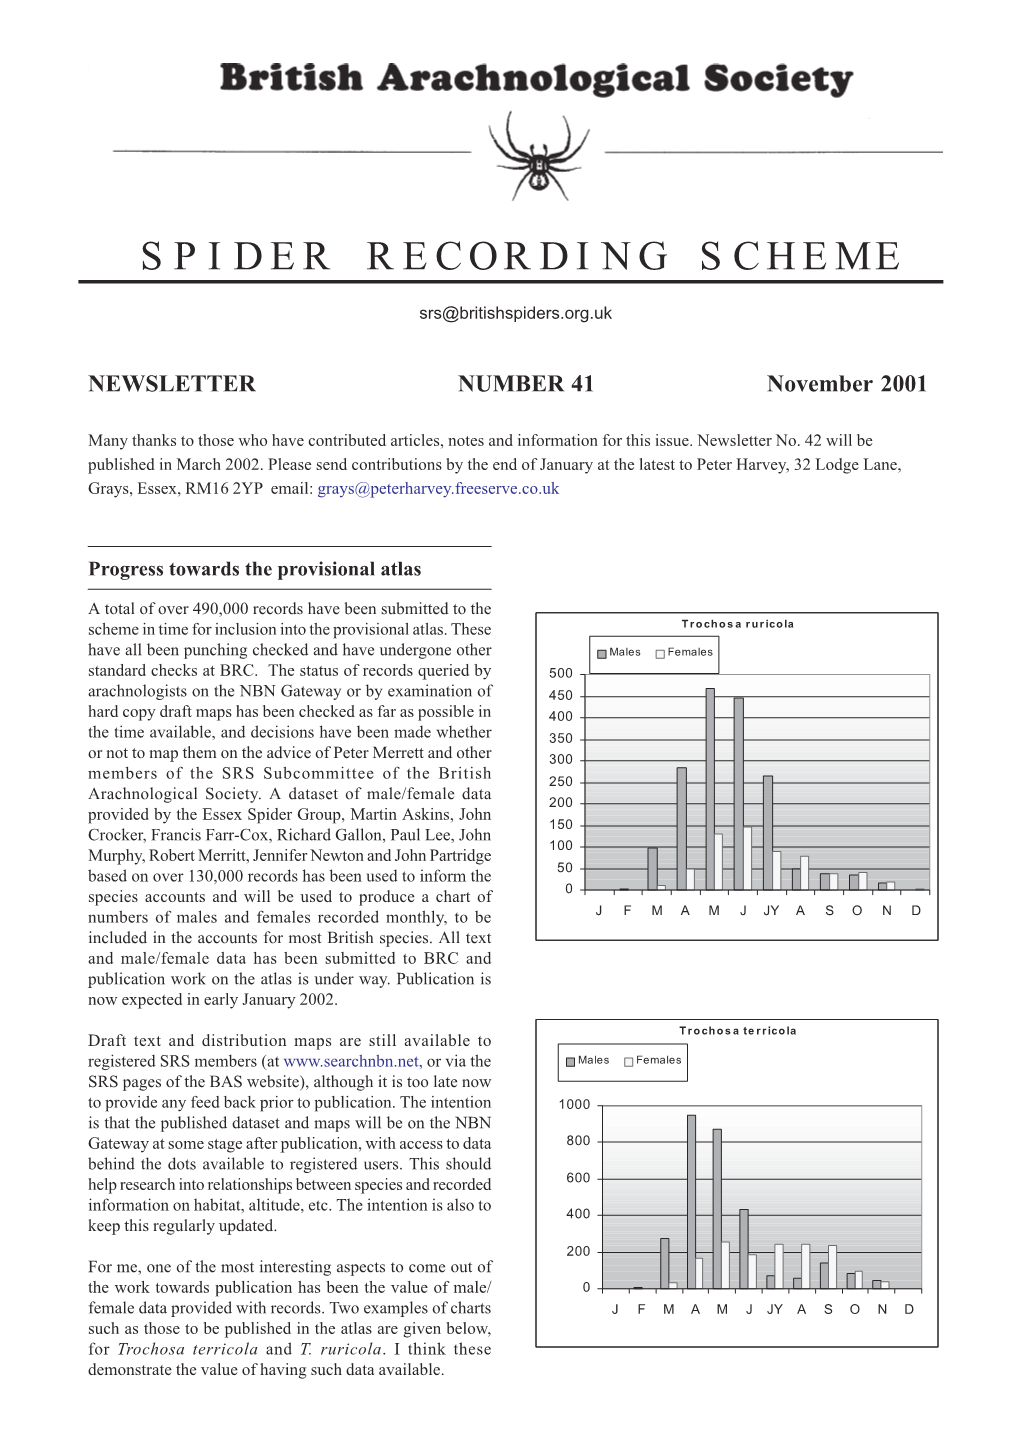 Newsletter 41-November 2001